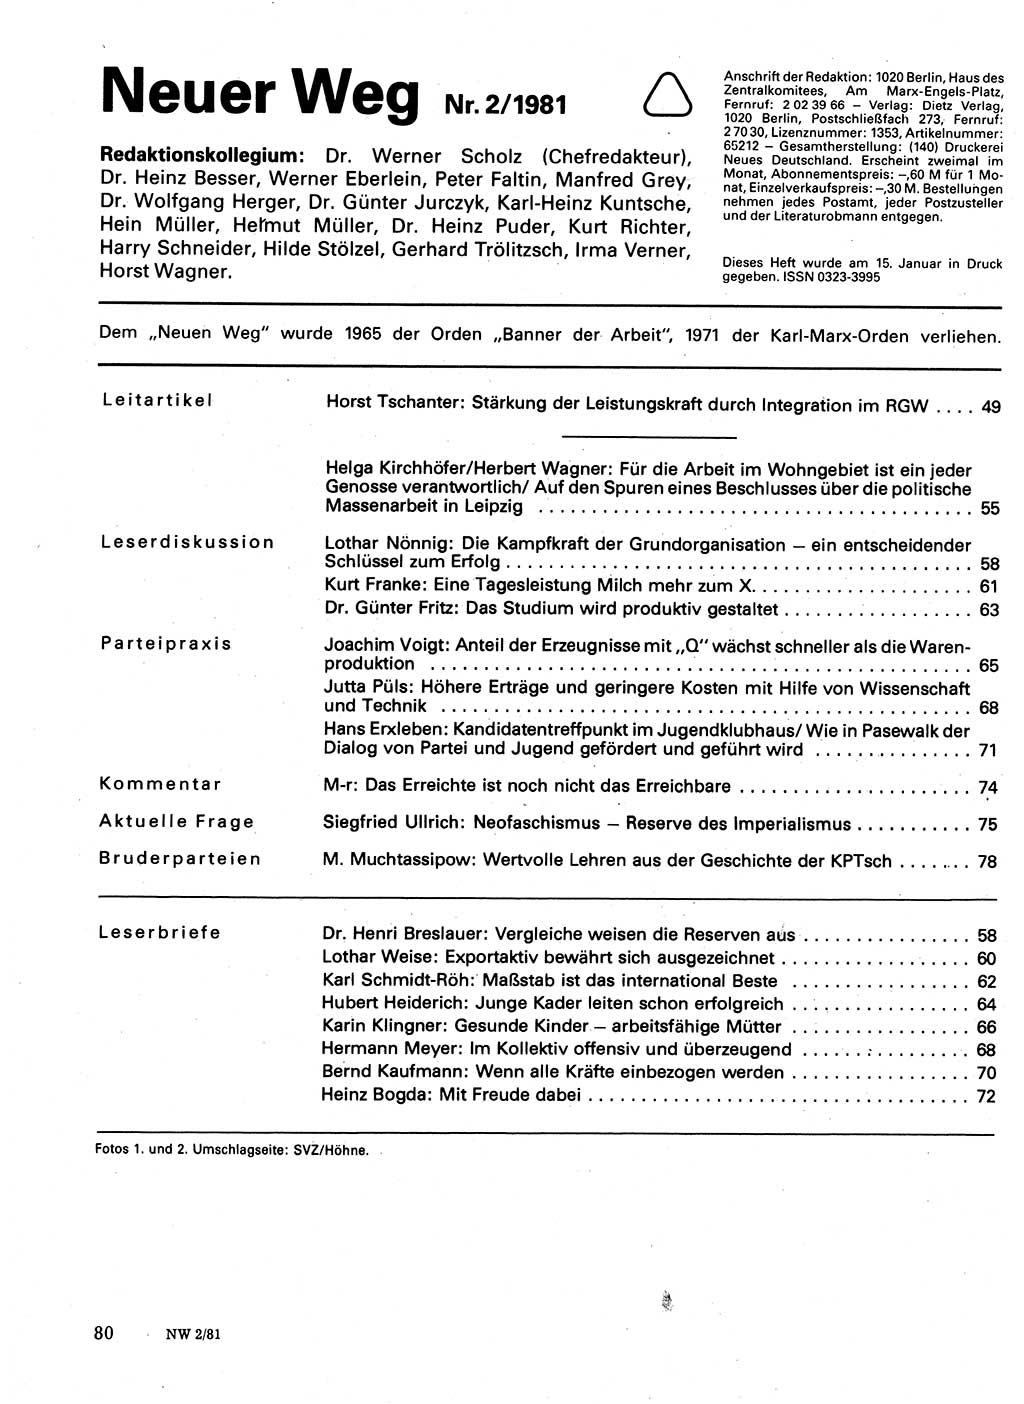 Neuer Weg (NW), Organ des Zentralkomitees (ZK) der SED (Sozialistische Einheitspartei Deutschlands) für Fragen des Parteilebens, 36. Jahrgang [Deutsche Demokratische Republik (DDR)] 1981, Seite 80 (NW ZK SED DDR 1981, S. 80)